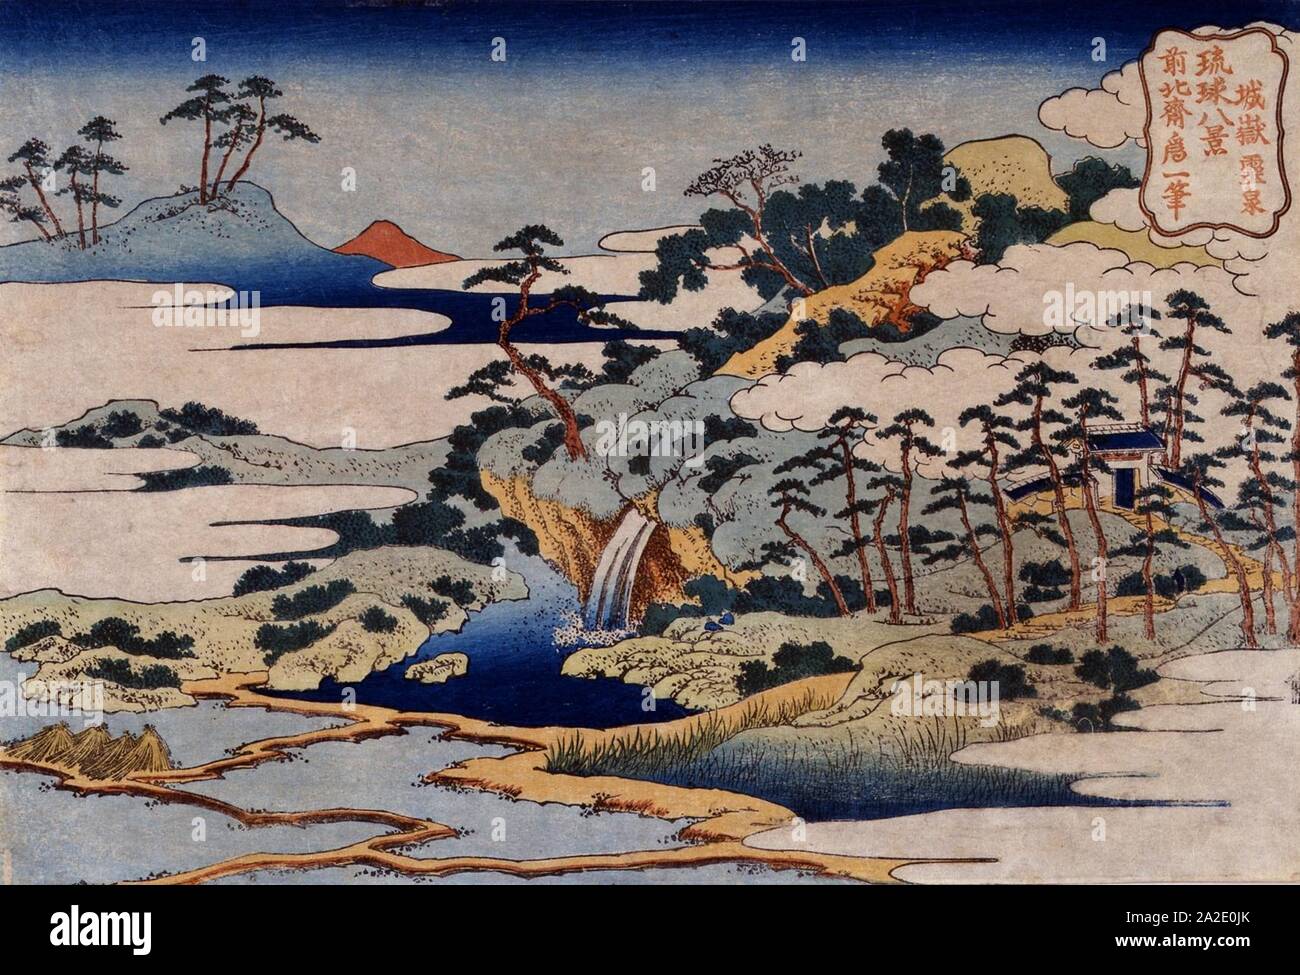 Otto viste delle isole Ryukyu da Hokusai ) - Fontana sacra al castello di picco. Foto Stock